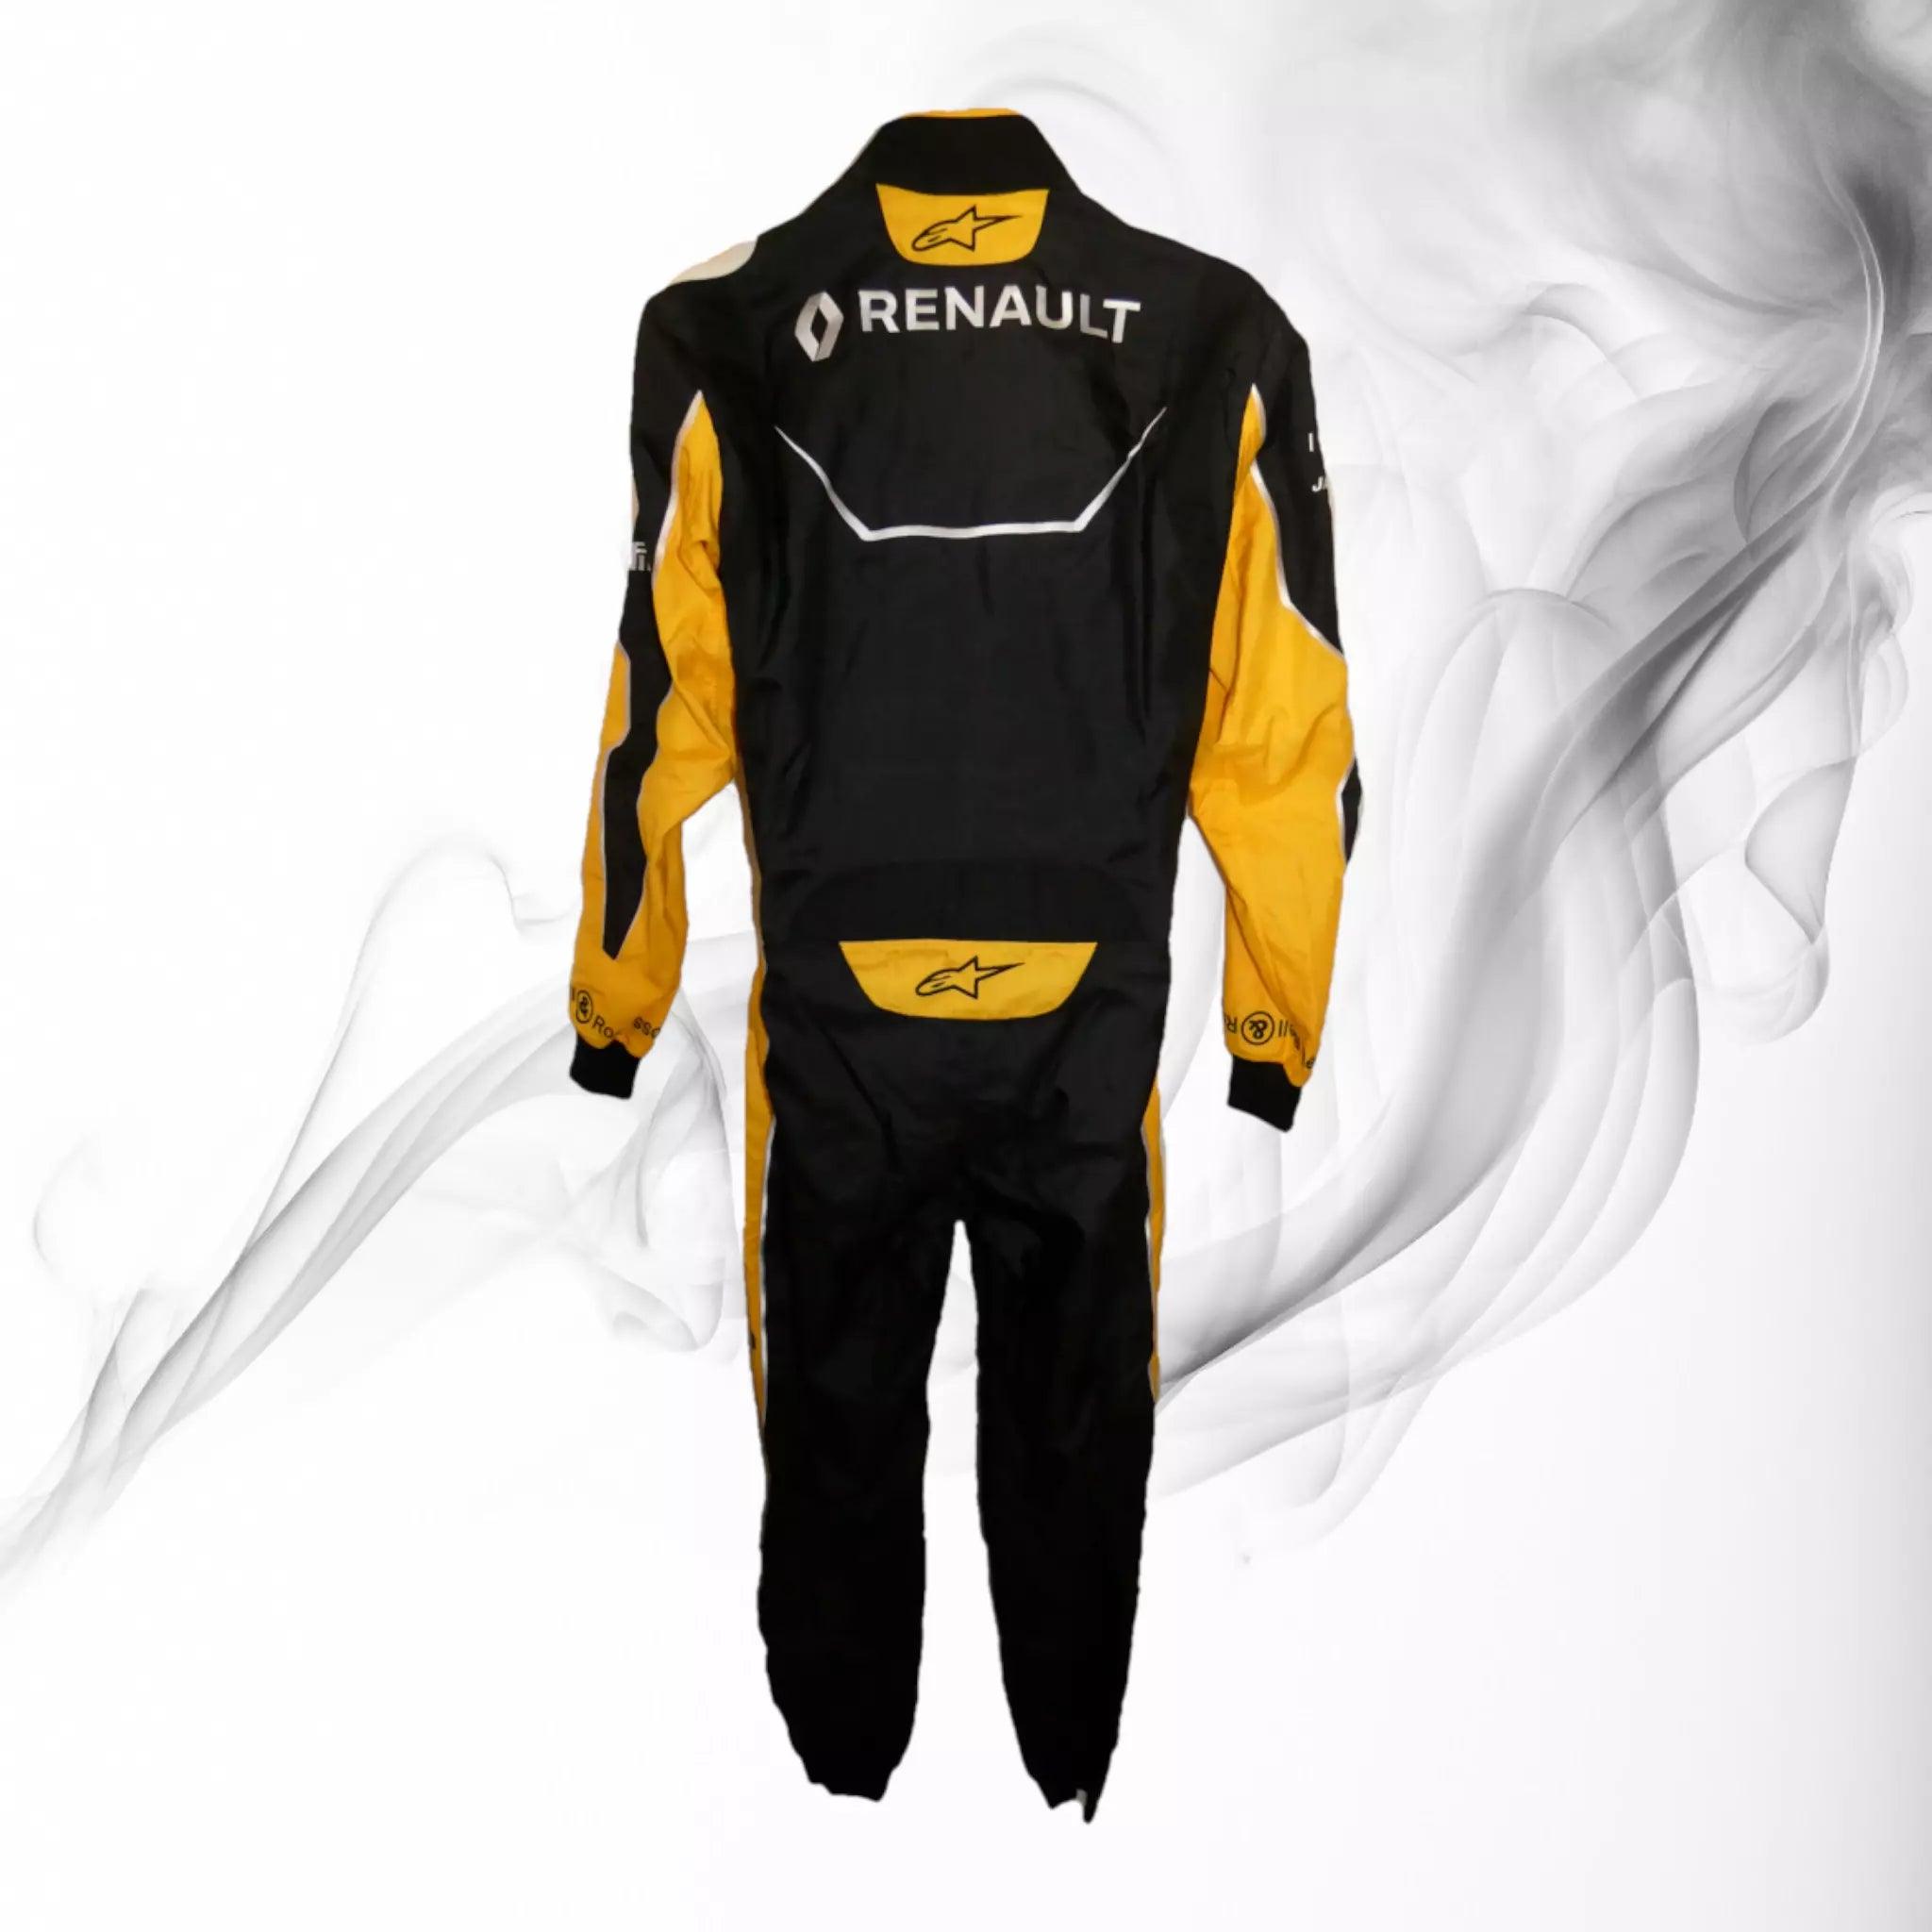 Jolyon Palmer 2016 Renault Sport F1 promotional race suit - Dash Racegear 